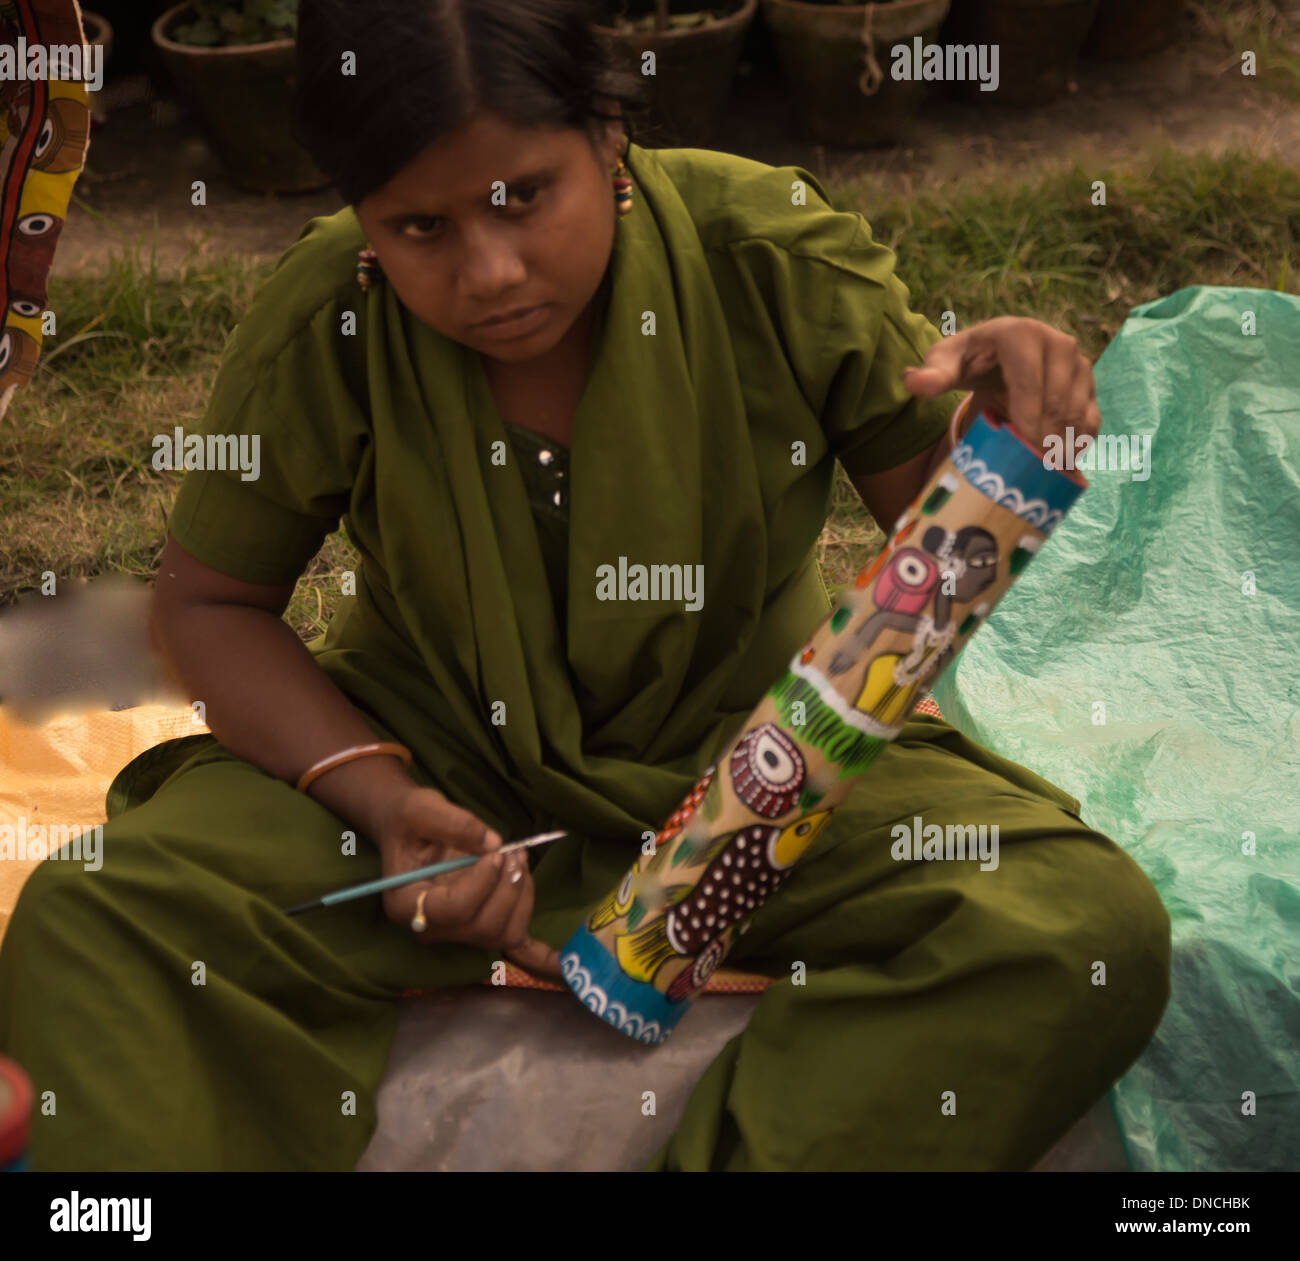 Mujeres de Asia meridional del pintor de desplazamiento lateral de carretera studio. Foto de stock